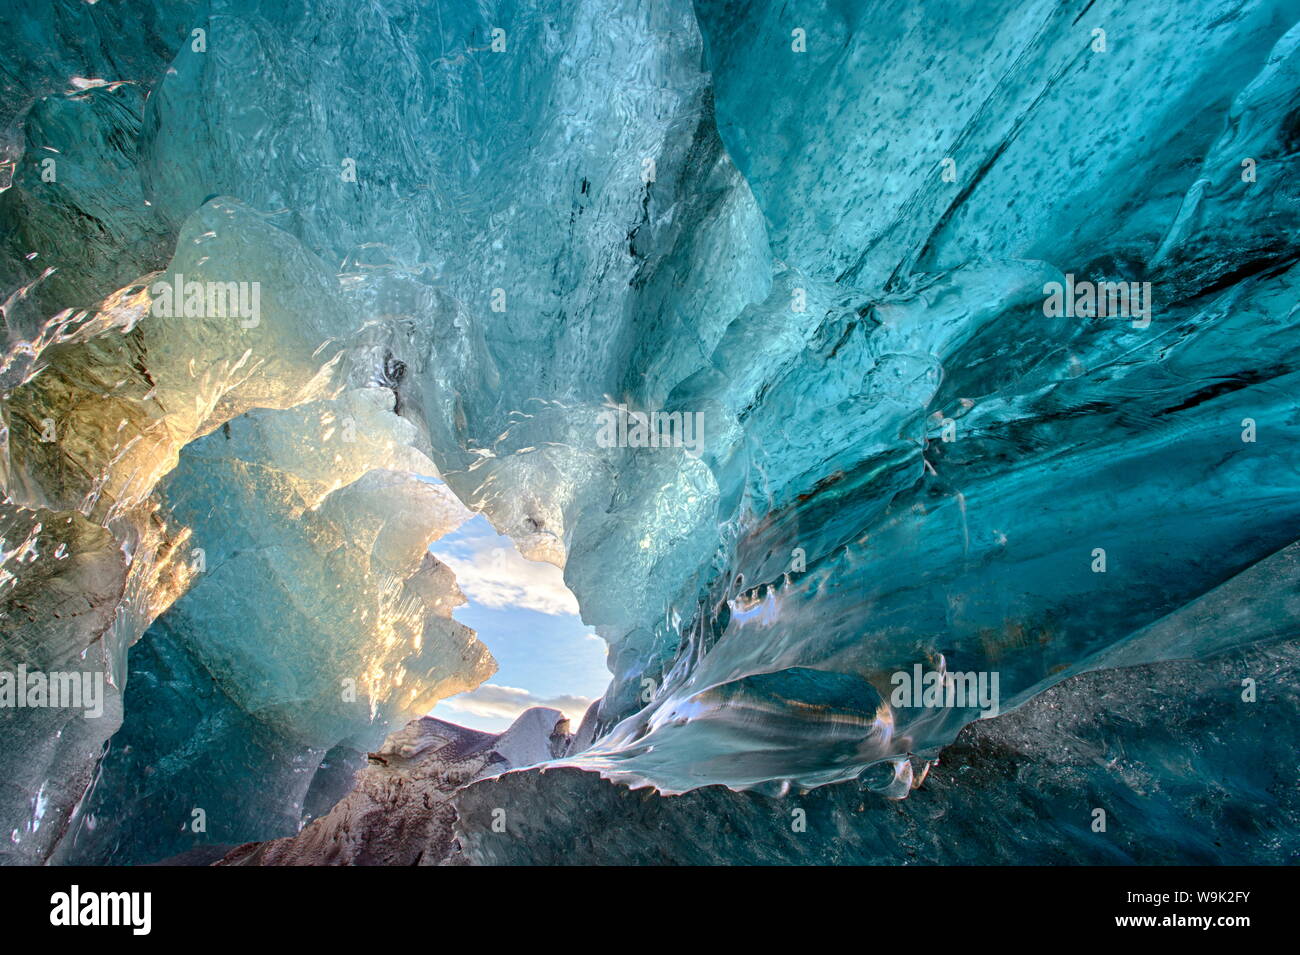 Vista dentro una caverna di ghiaccio sotto il sud ghiacciaio Vatnajokull, acquisite a sunrise durante la stagione invernale quando le grotte di ghiaccio sono accessibili, Jokulsarlon, Islanda Foto Stock